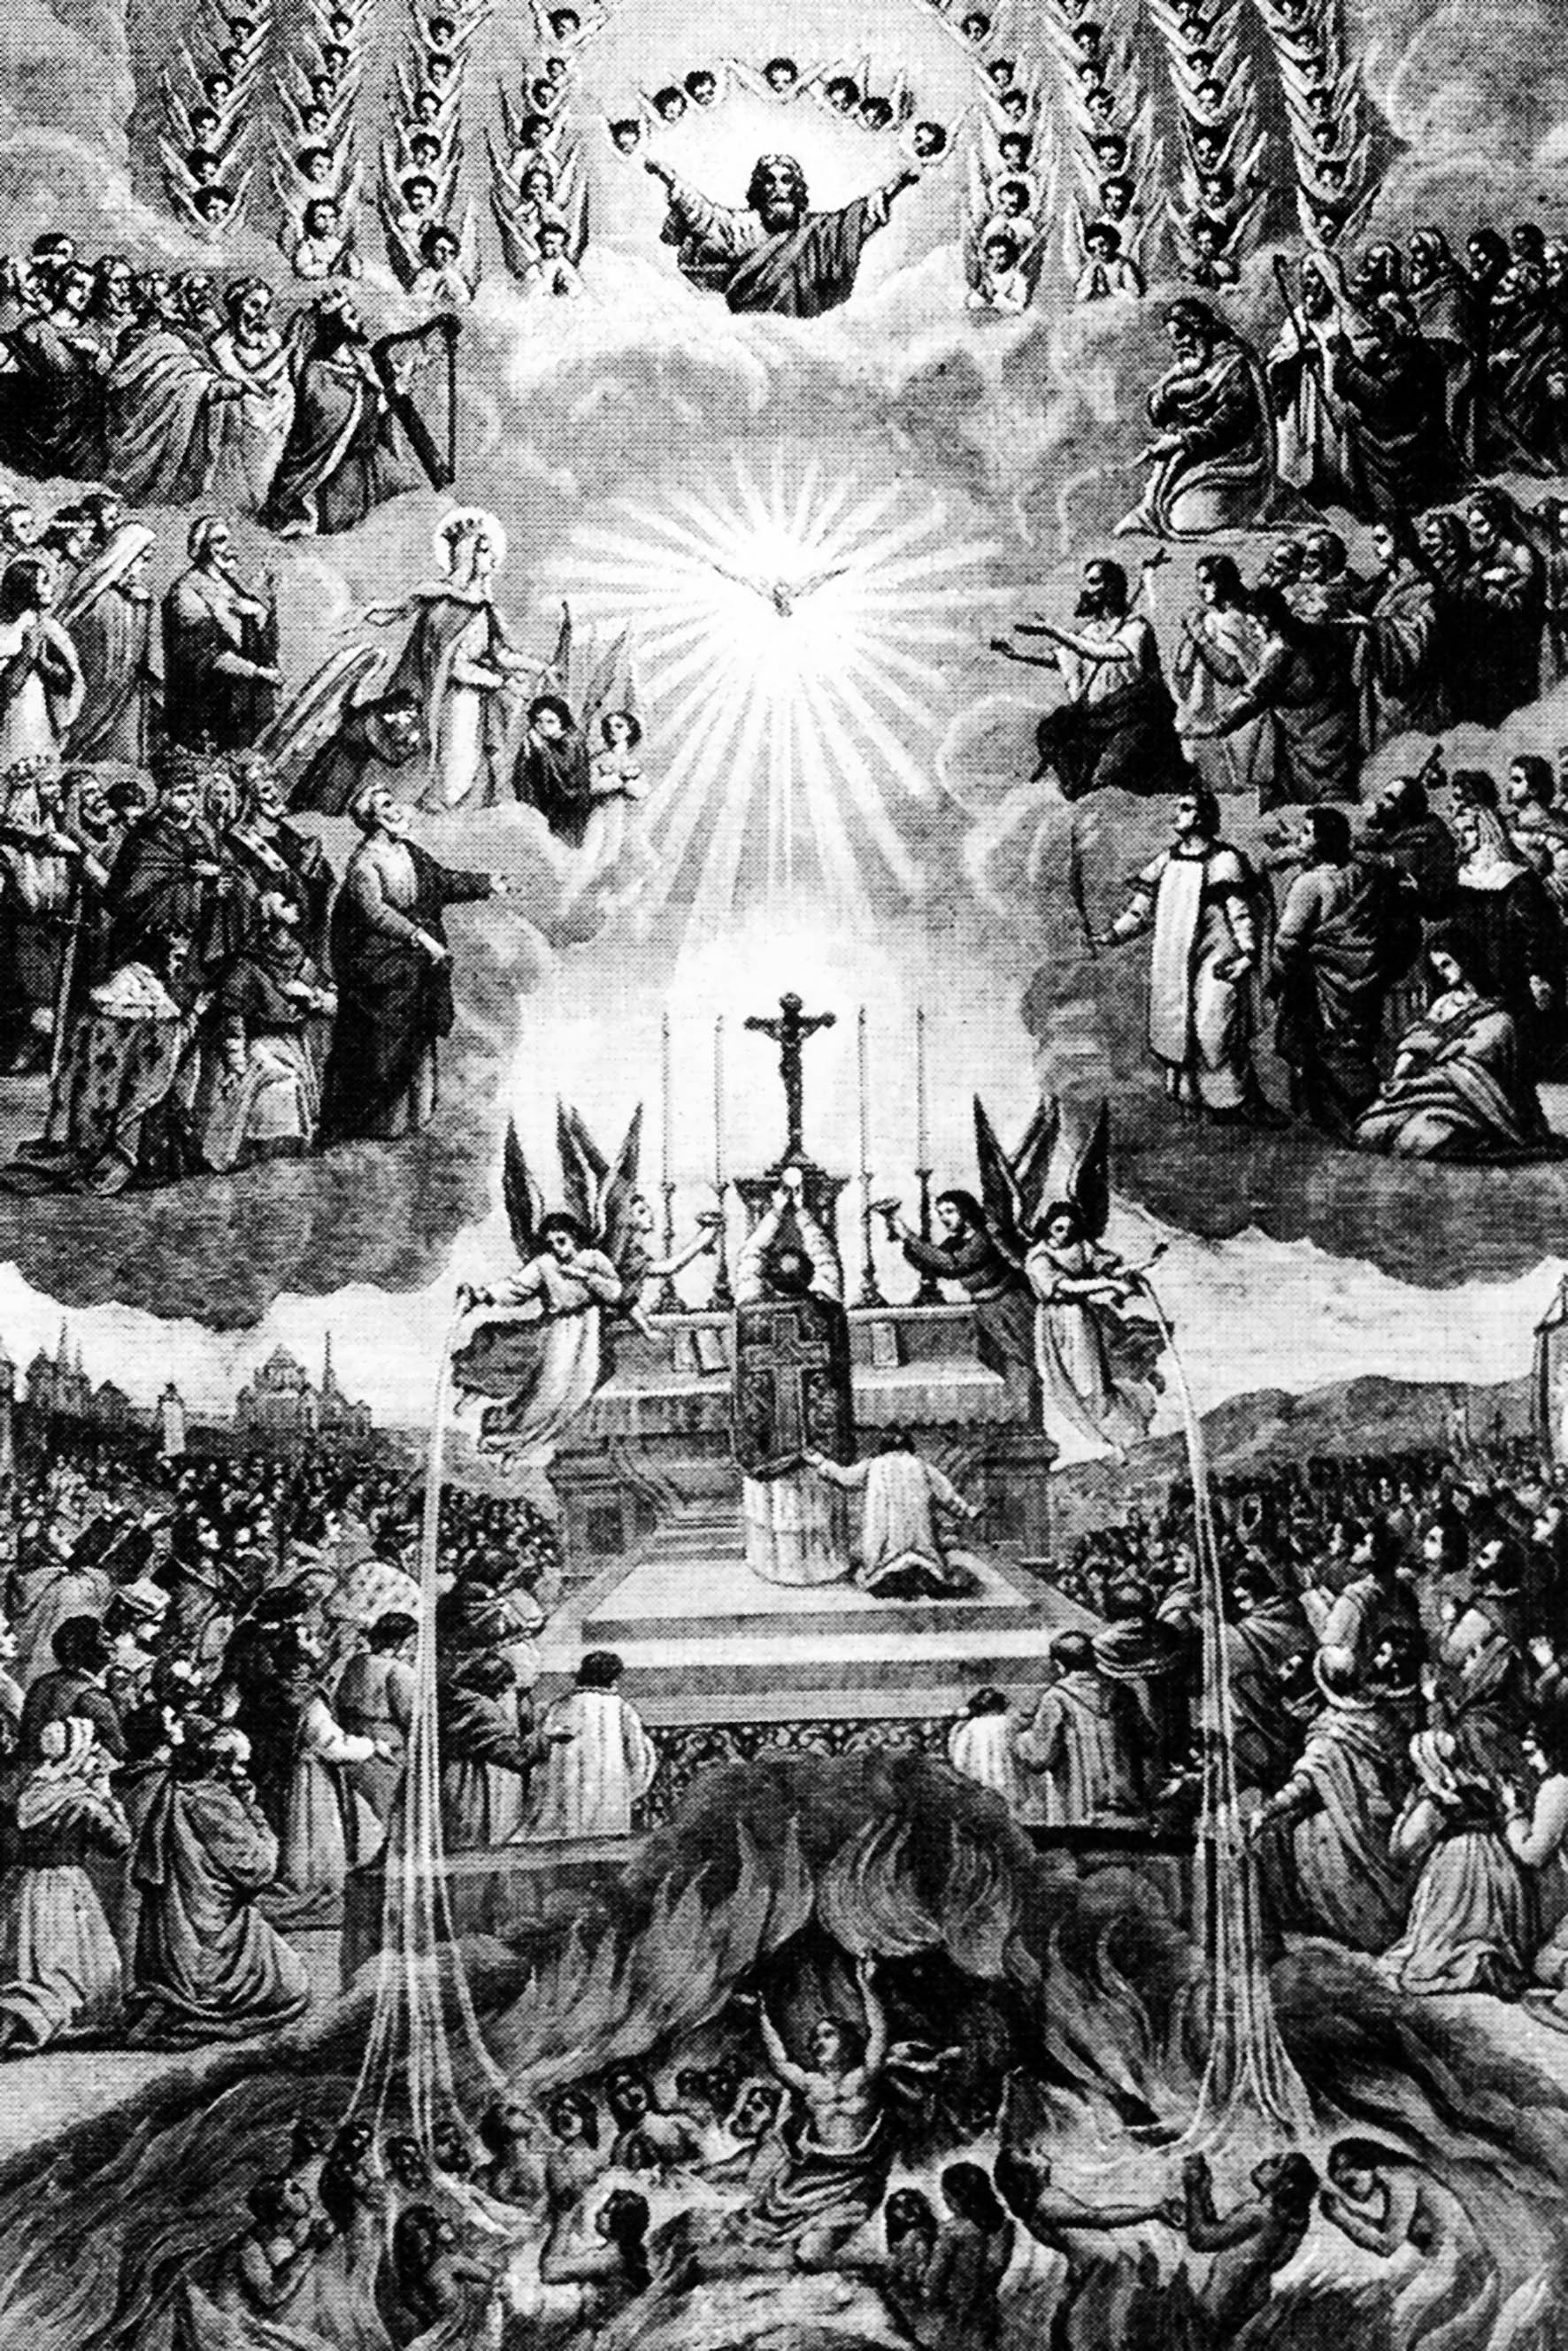 Symbolique de la Messe,renouvellement non sanglant du Sacrifice de Jésus Christ sur la Croix, promenez vous sur l'image et contemplez...